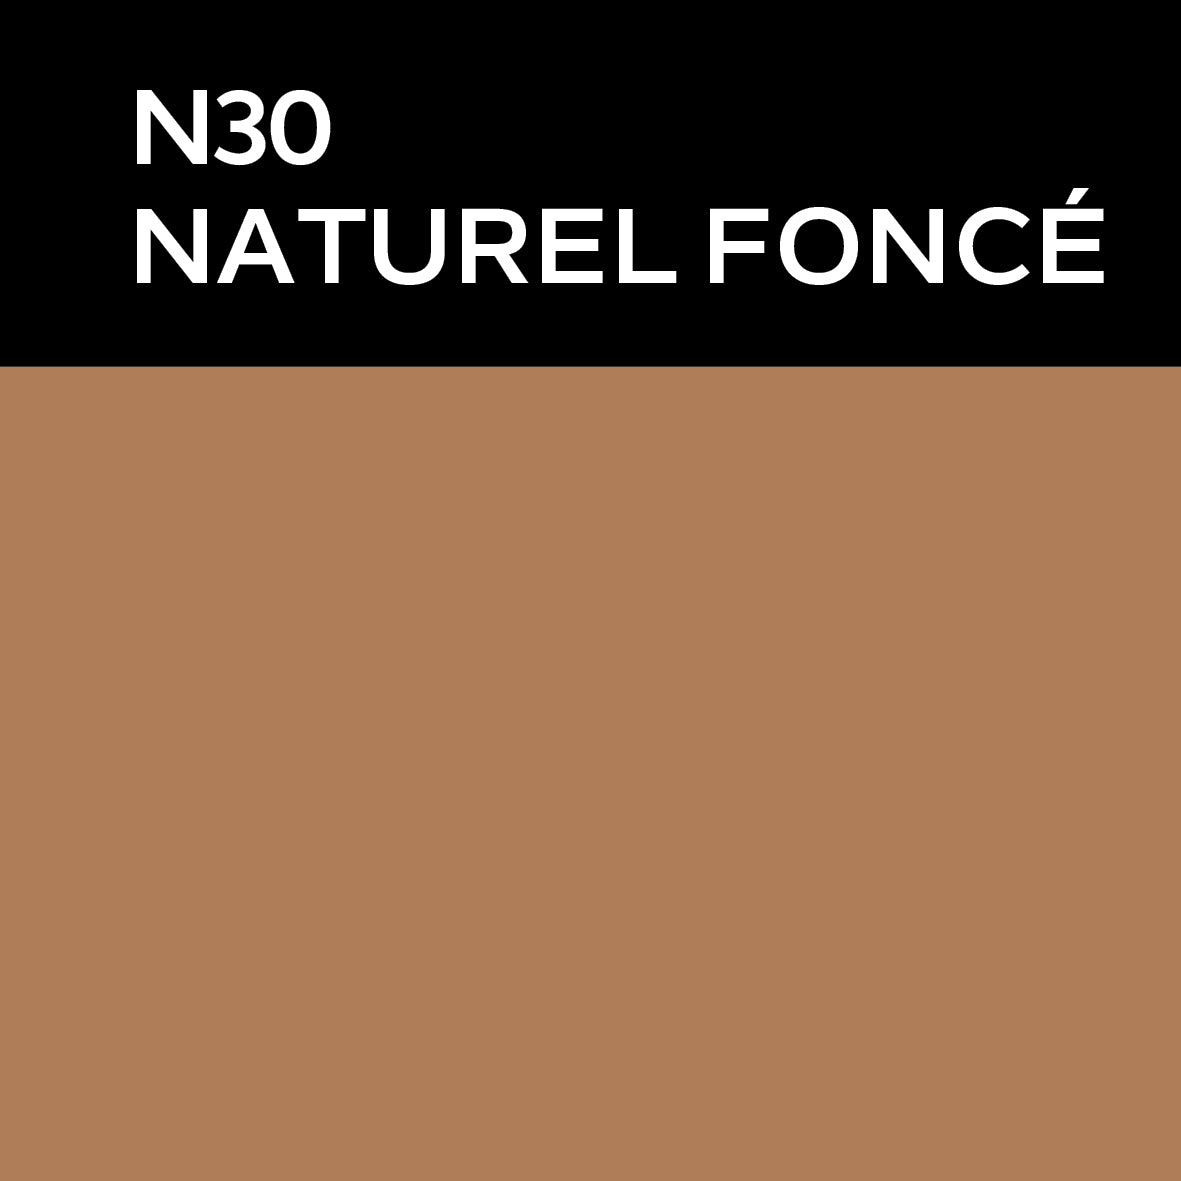 Farge N30 Naturel Fonce. foto